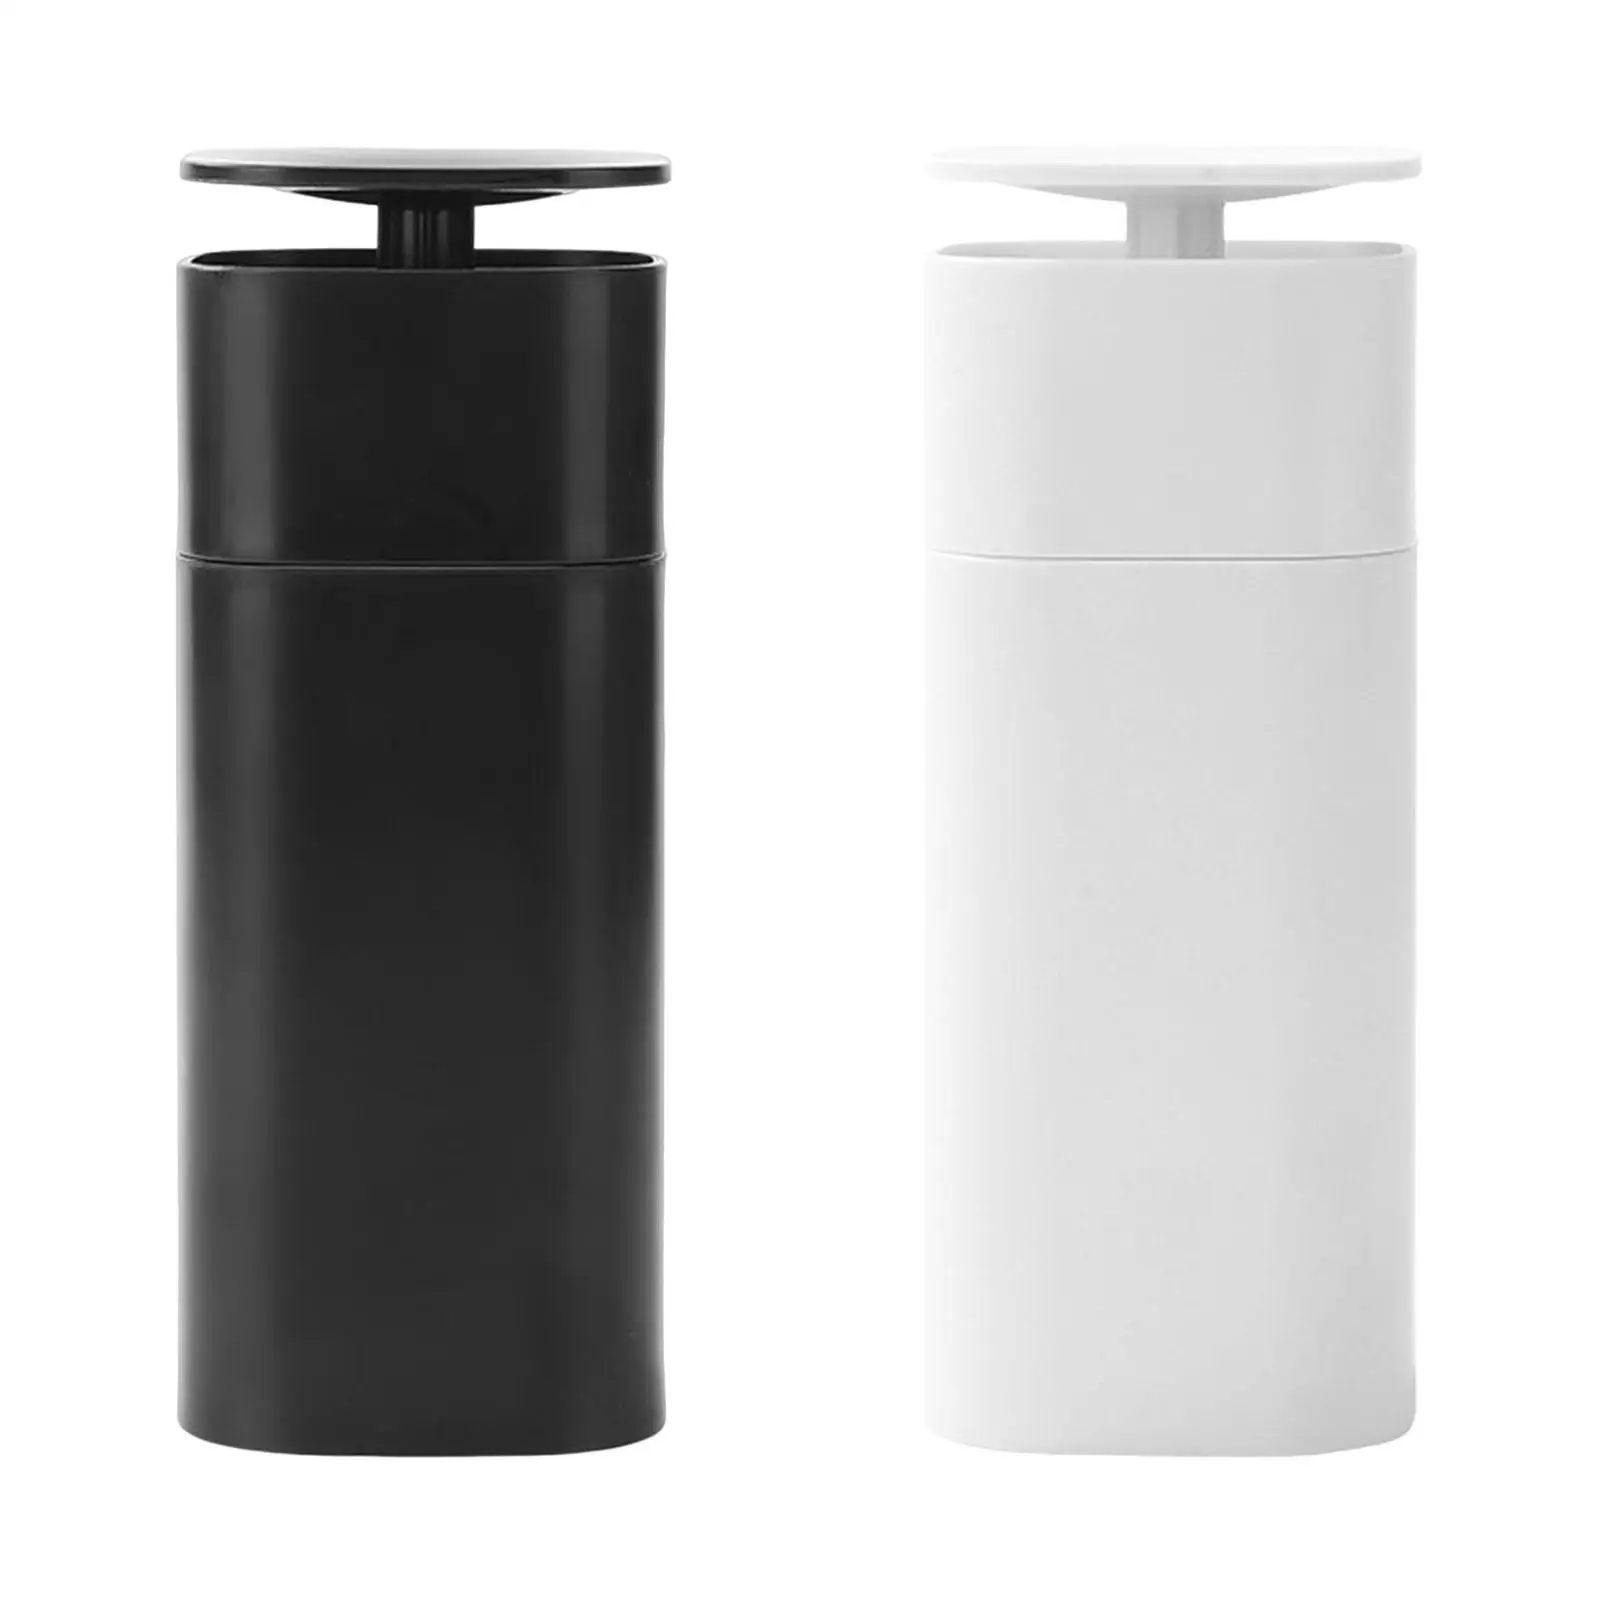 Shower Dispenser Refillable Empty Bottles Reusable Container Liquid Soap Dispenser for Home Restaurant Kitchen Bathroom